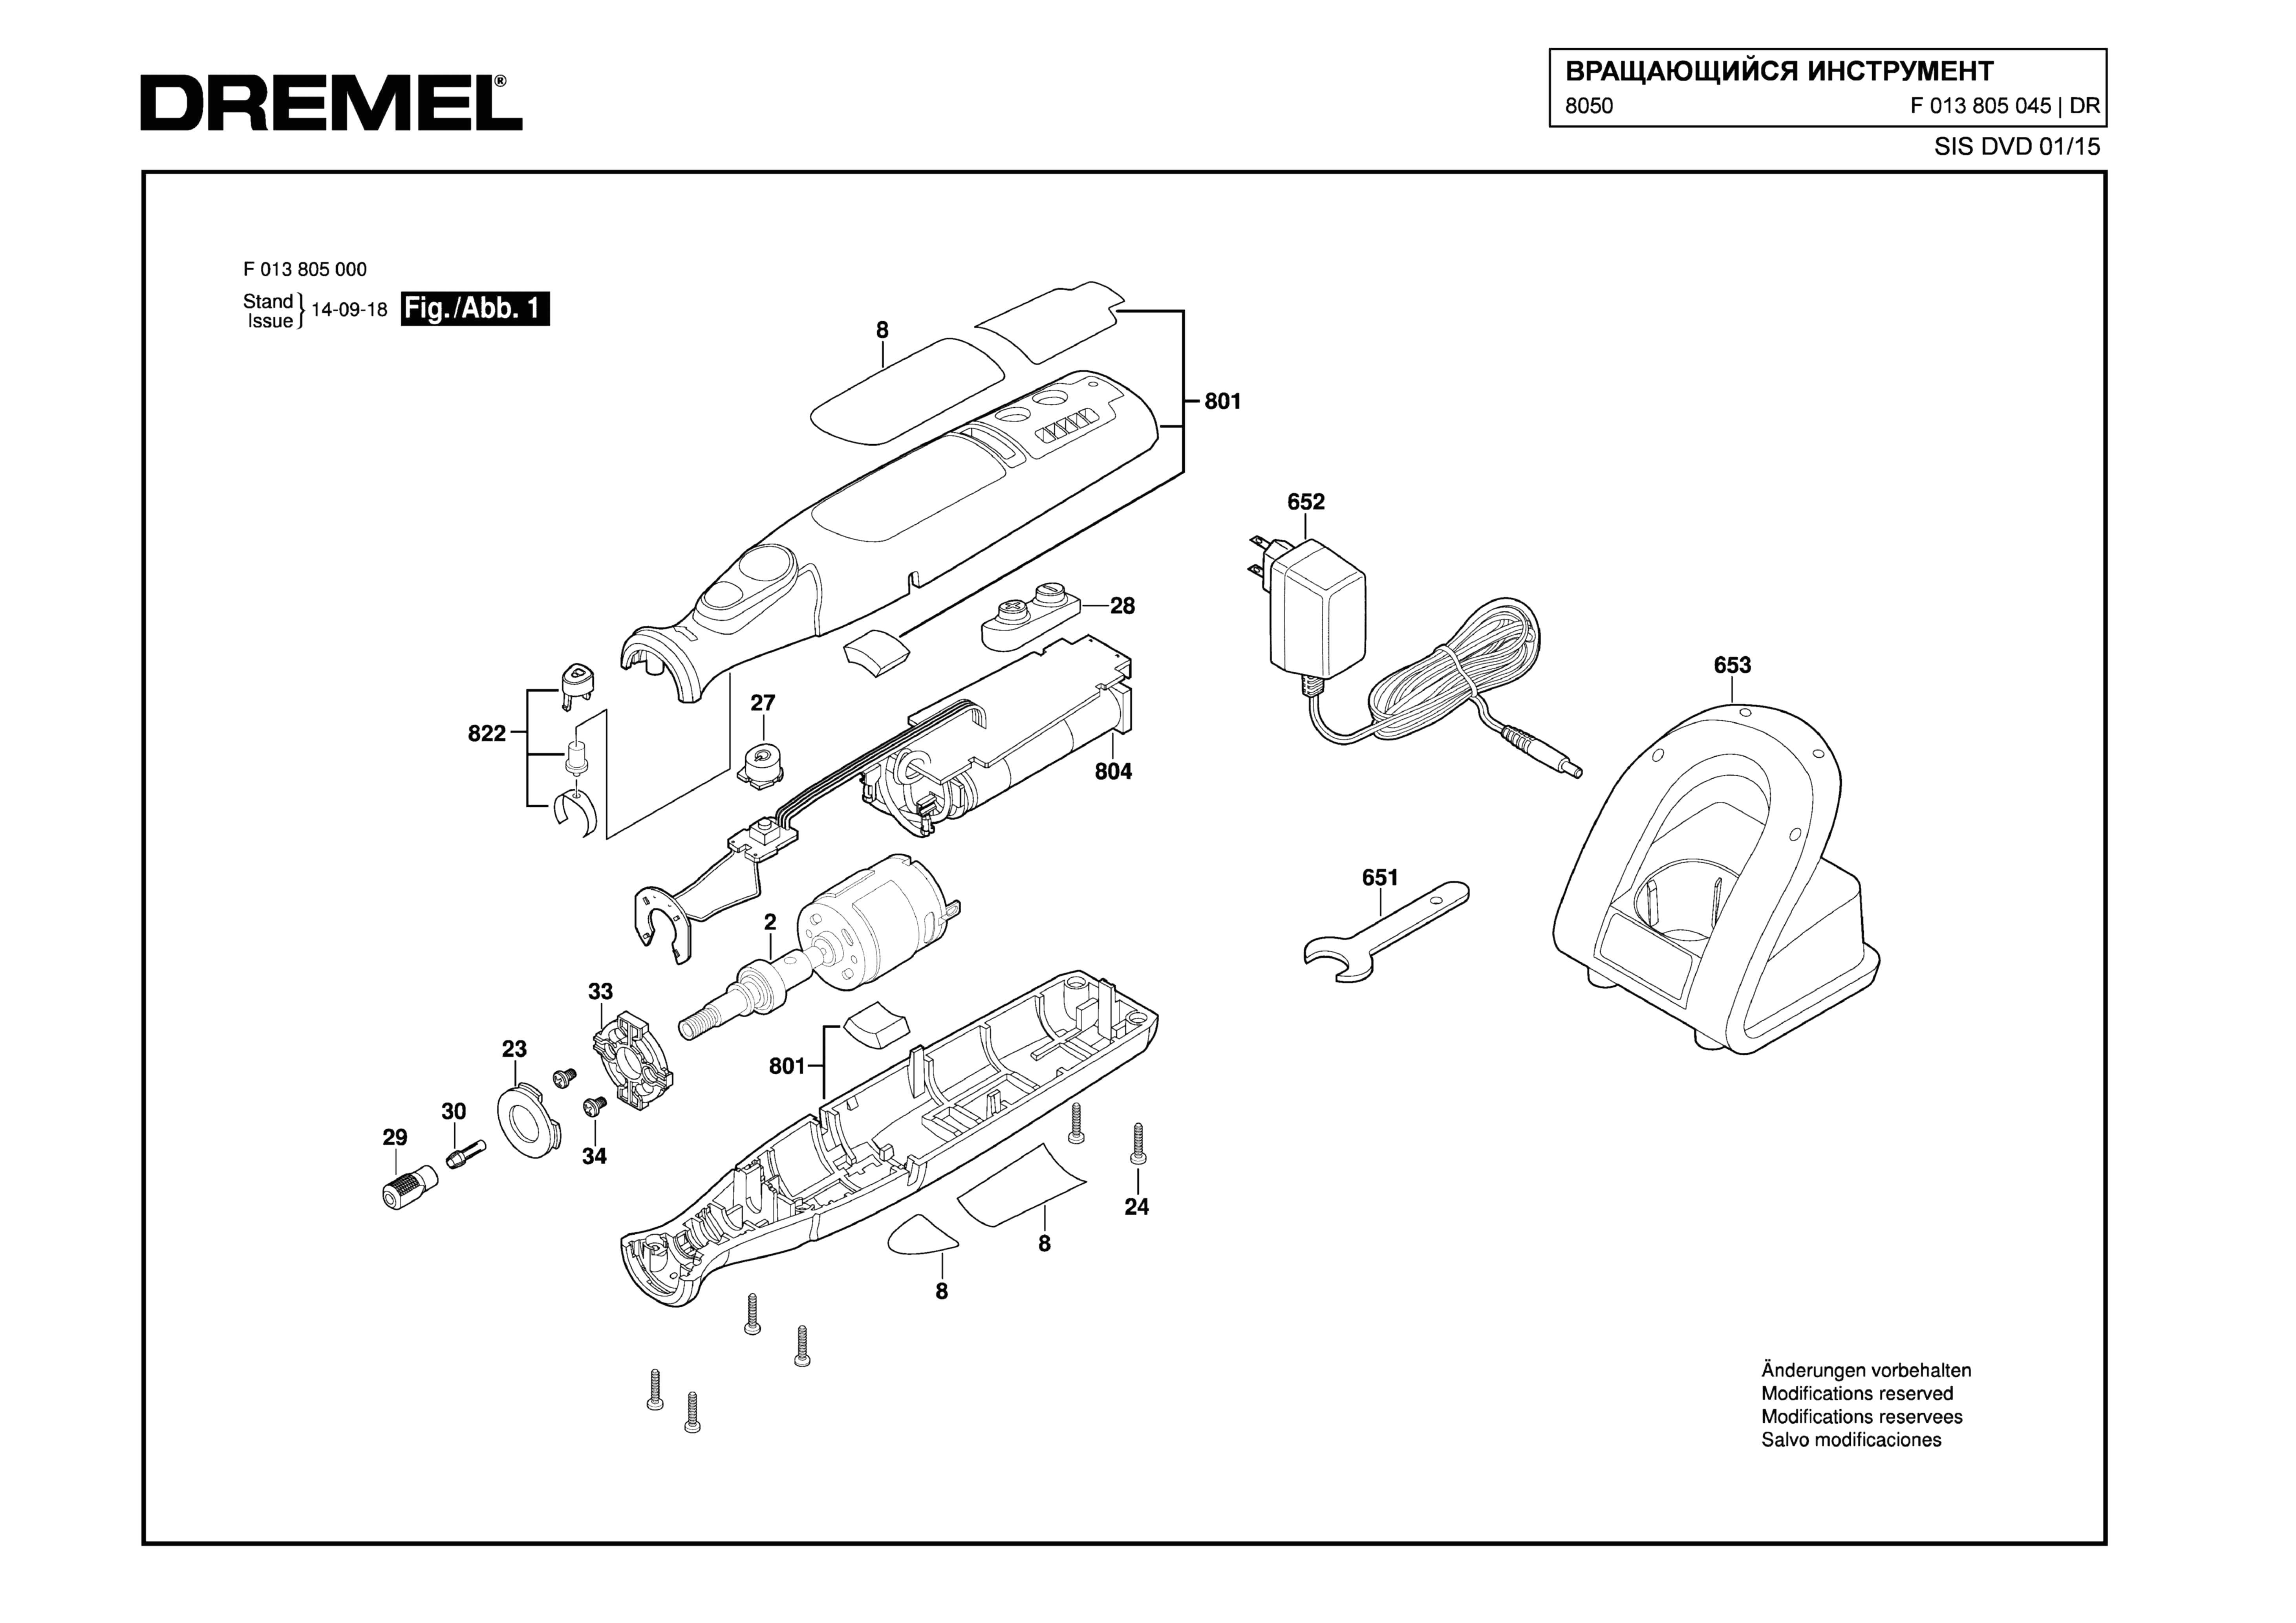 Шлифовальная машина Dremel 8050 (ТИП F013805045)